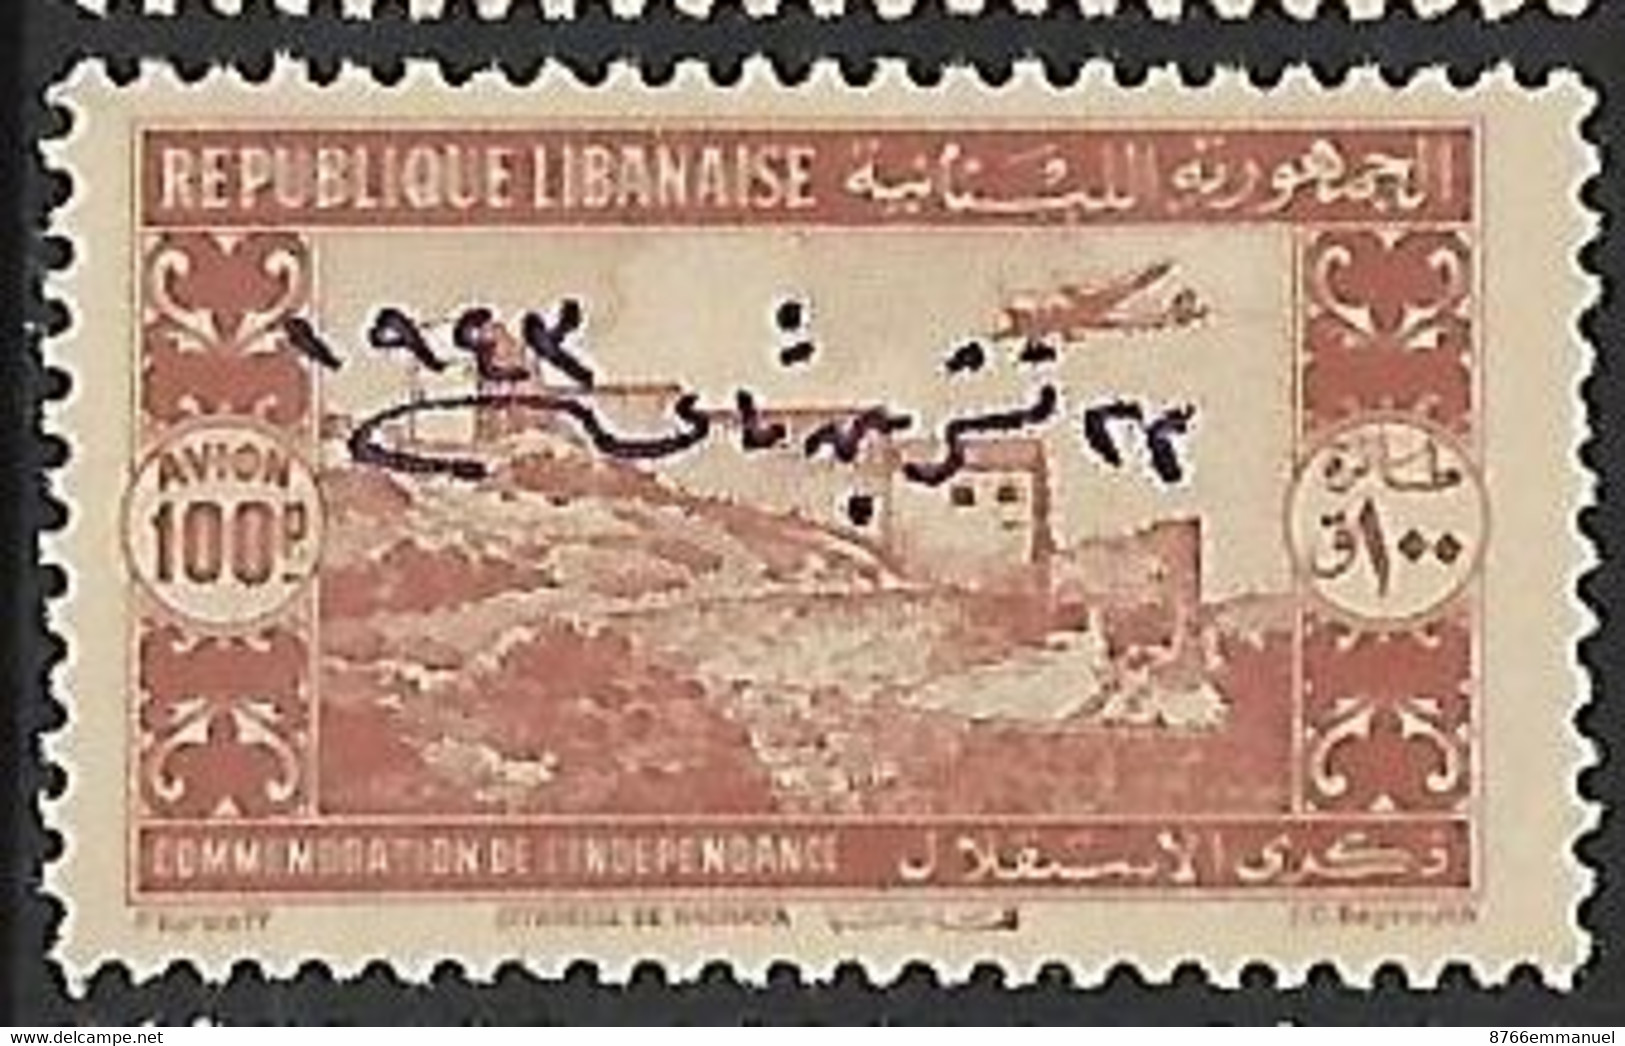 GRAND LIBAN AERIEN N°93 N* - Aéreo